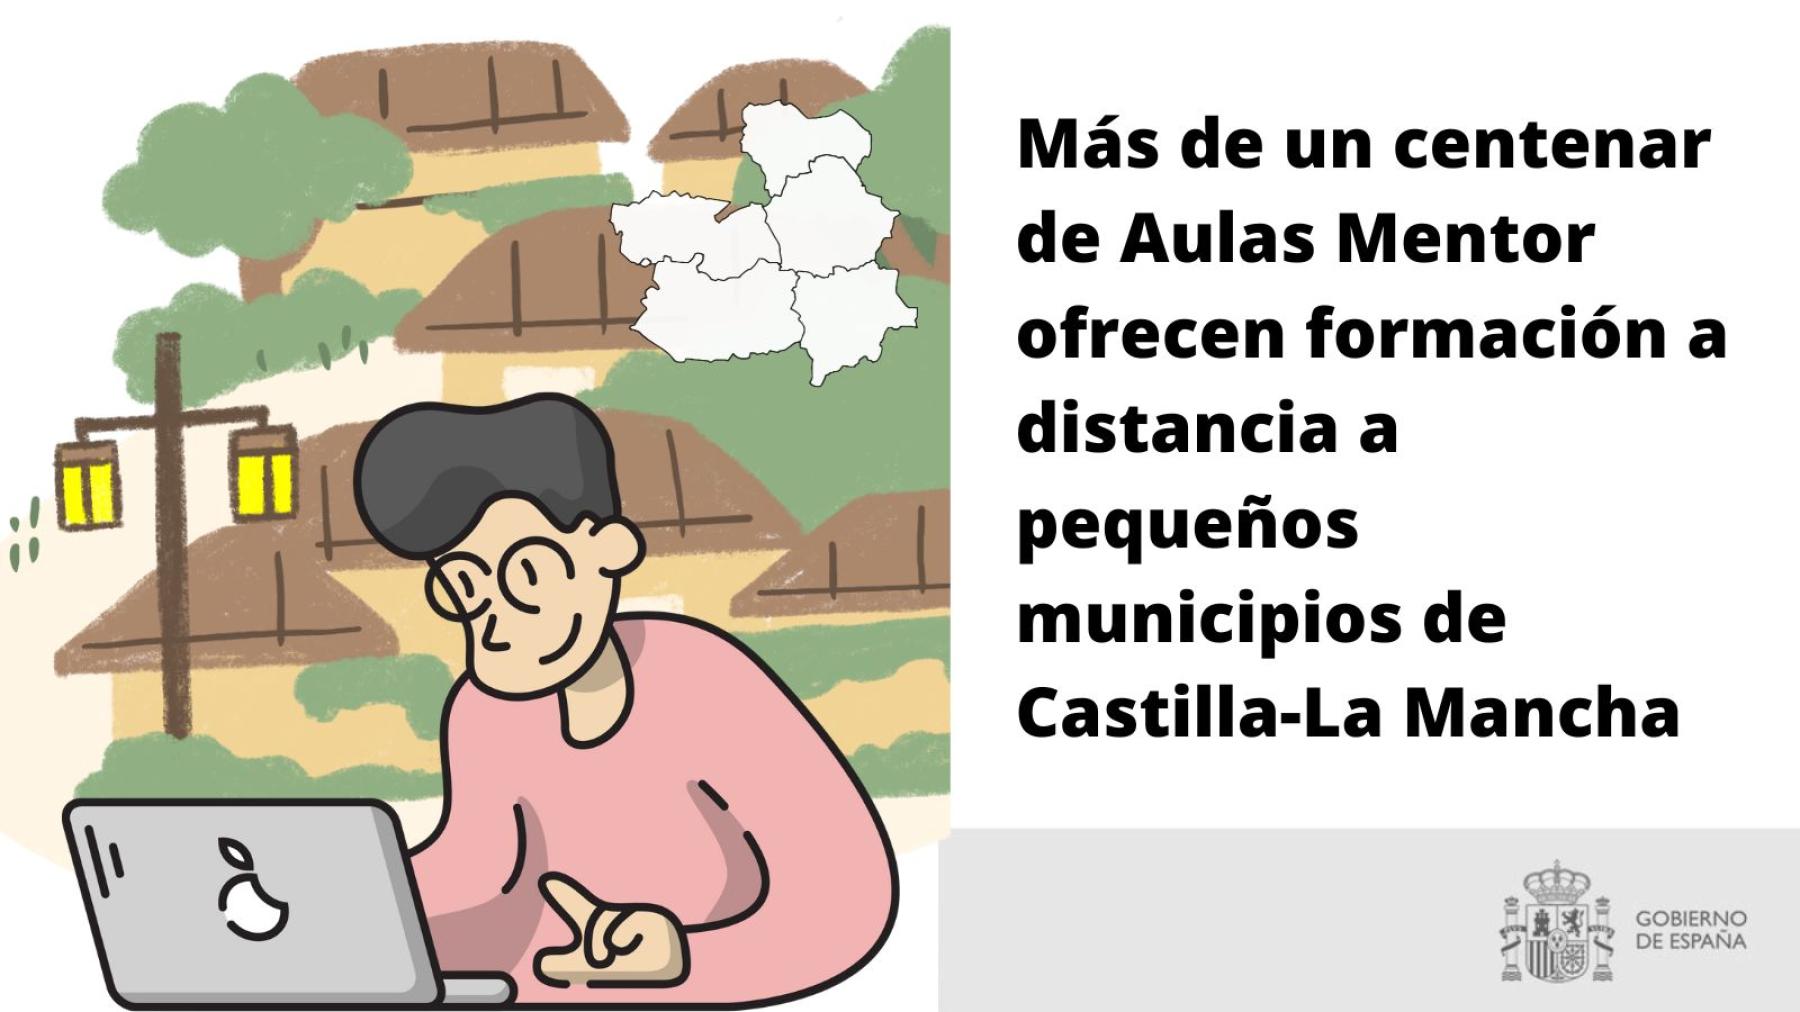 Más de un centenar de Aulas Mentor ofrecen formación a distancia a pequeños municipios de Castilla-La Mancha